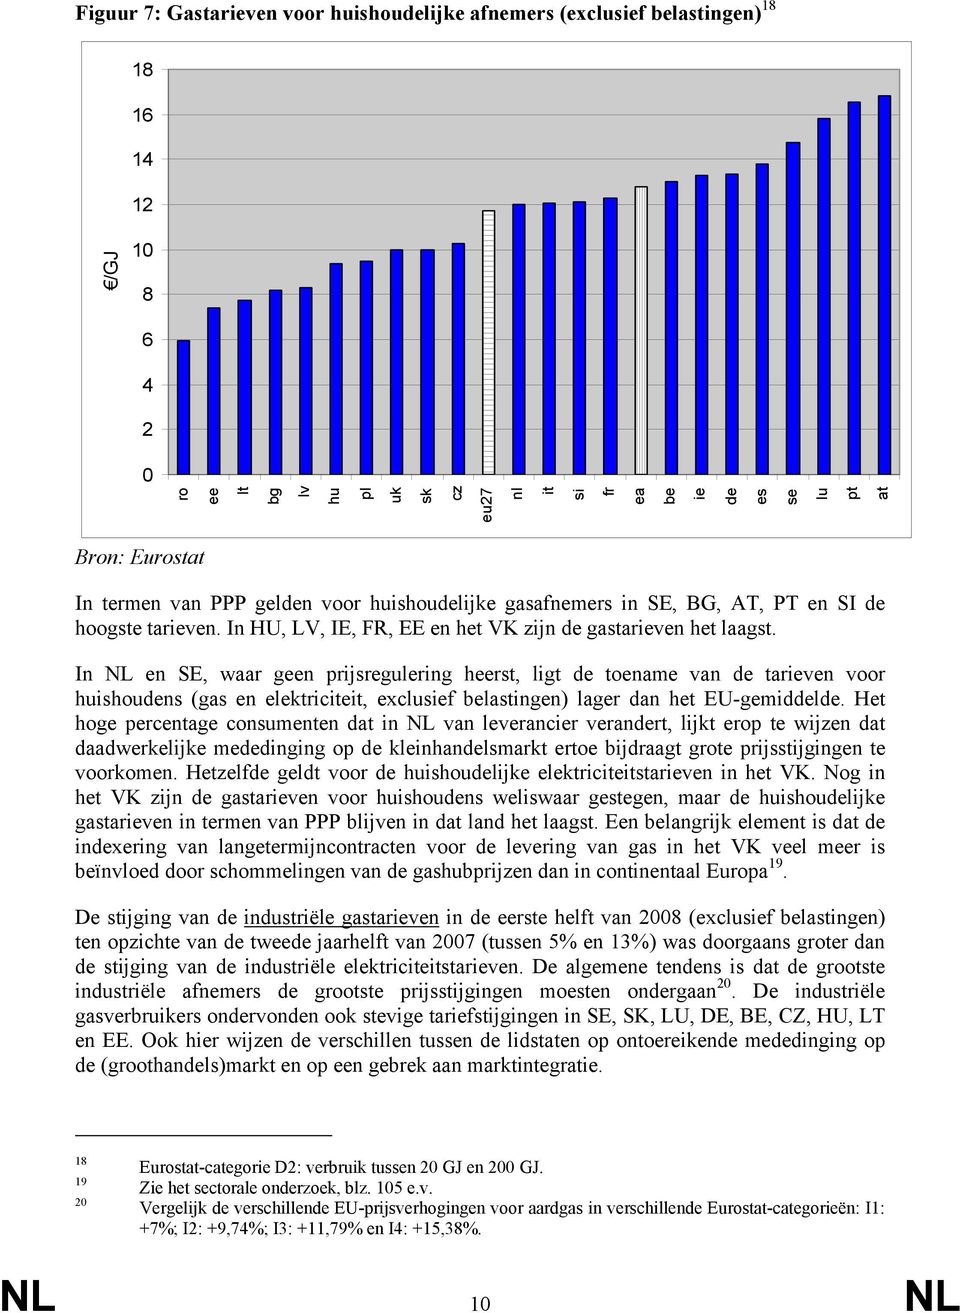 In NL en SE, waar geen prijsregulering heerst, ligt de toename van de tarieven voor huishoudens (gas en elektriciteit, exclusief belastingen) lager dan het EU-gemiddelde.